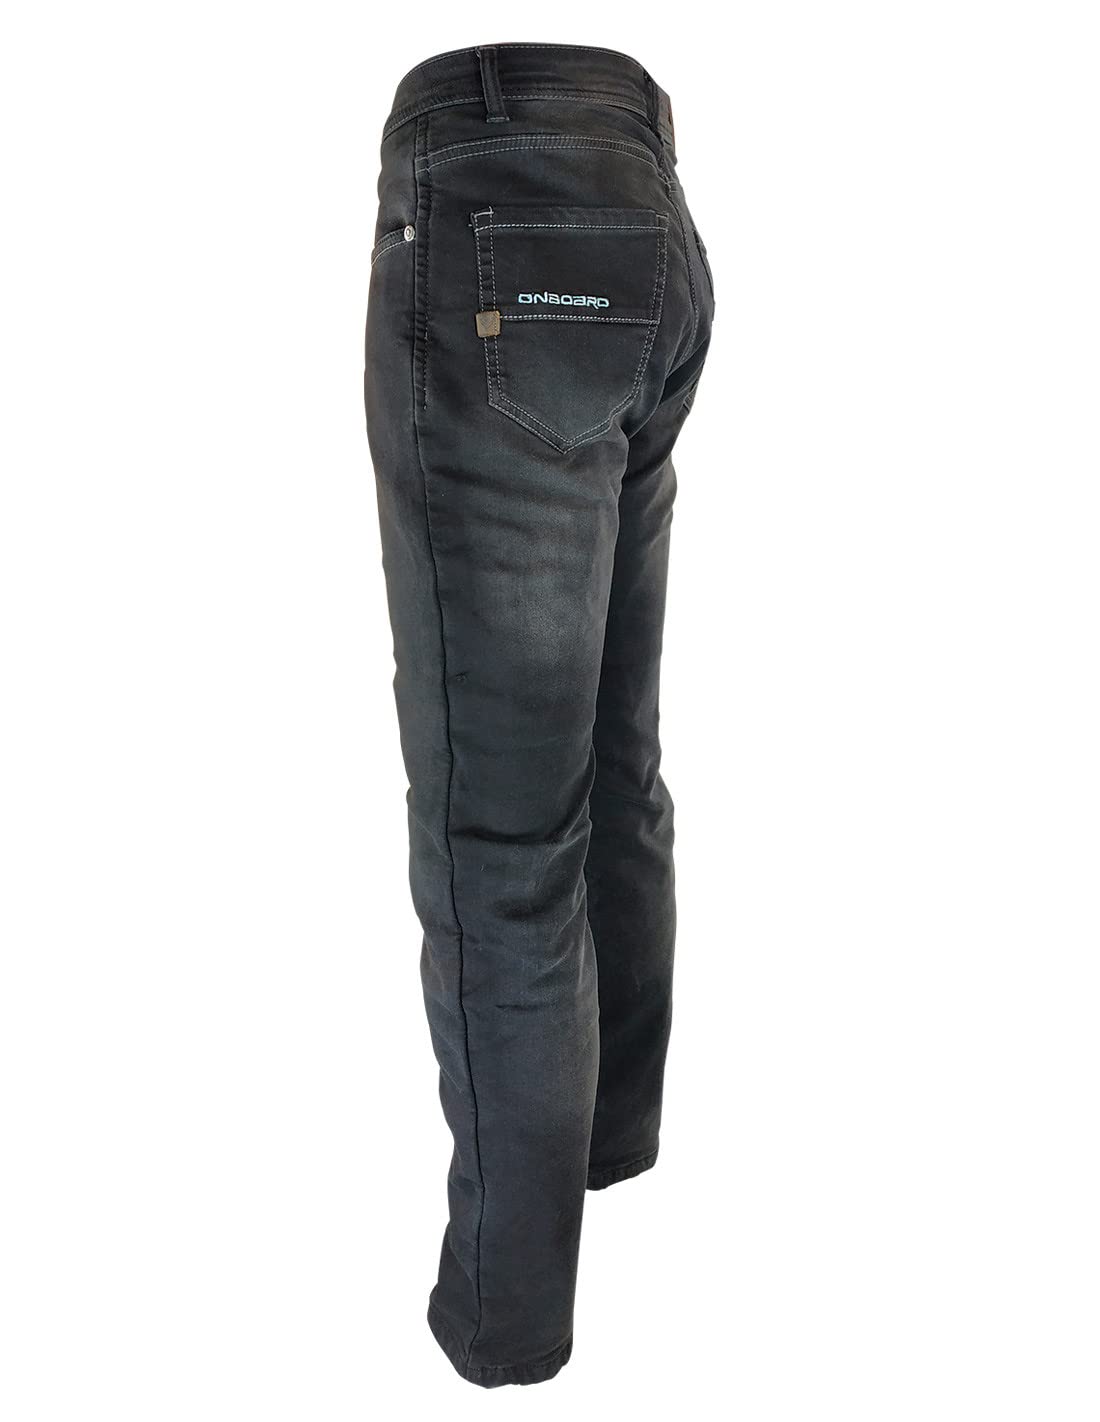 ON BOARD Concept Jeanshose mit Protektoren, Herren, 31, dunkelblau von ON BOARD